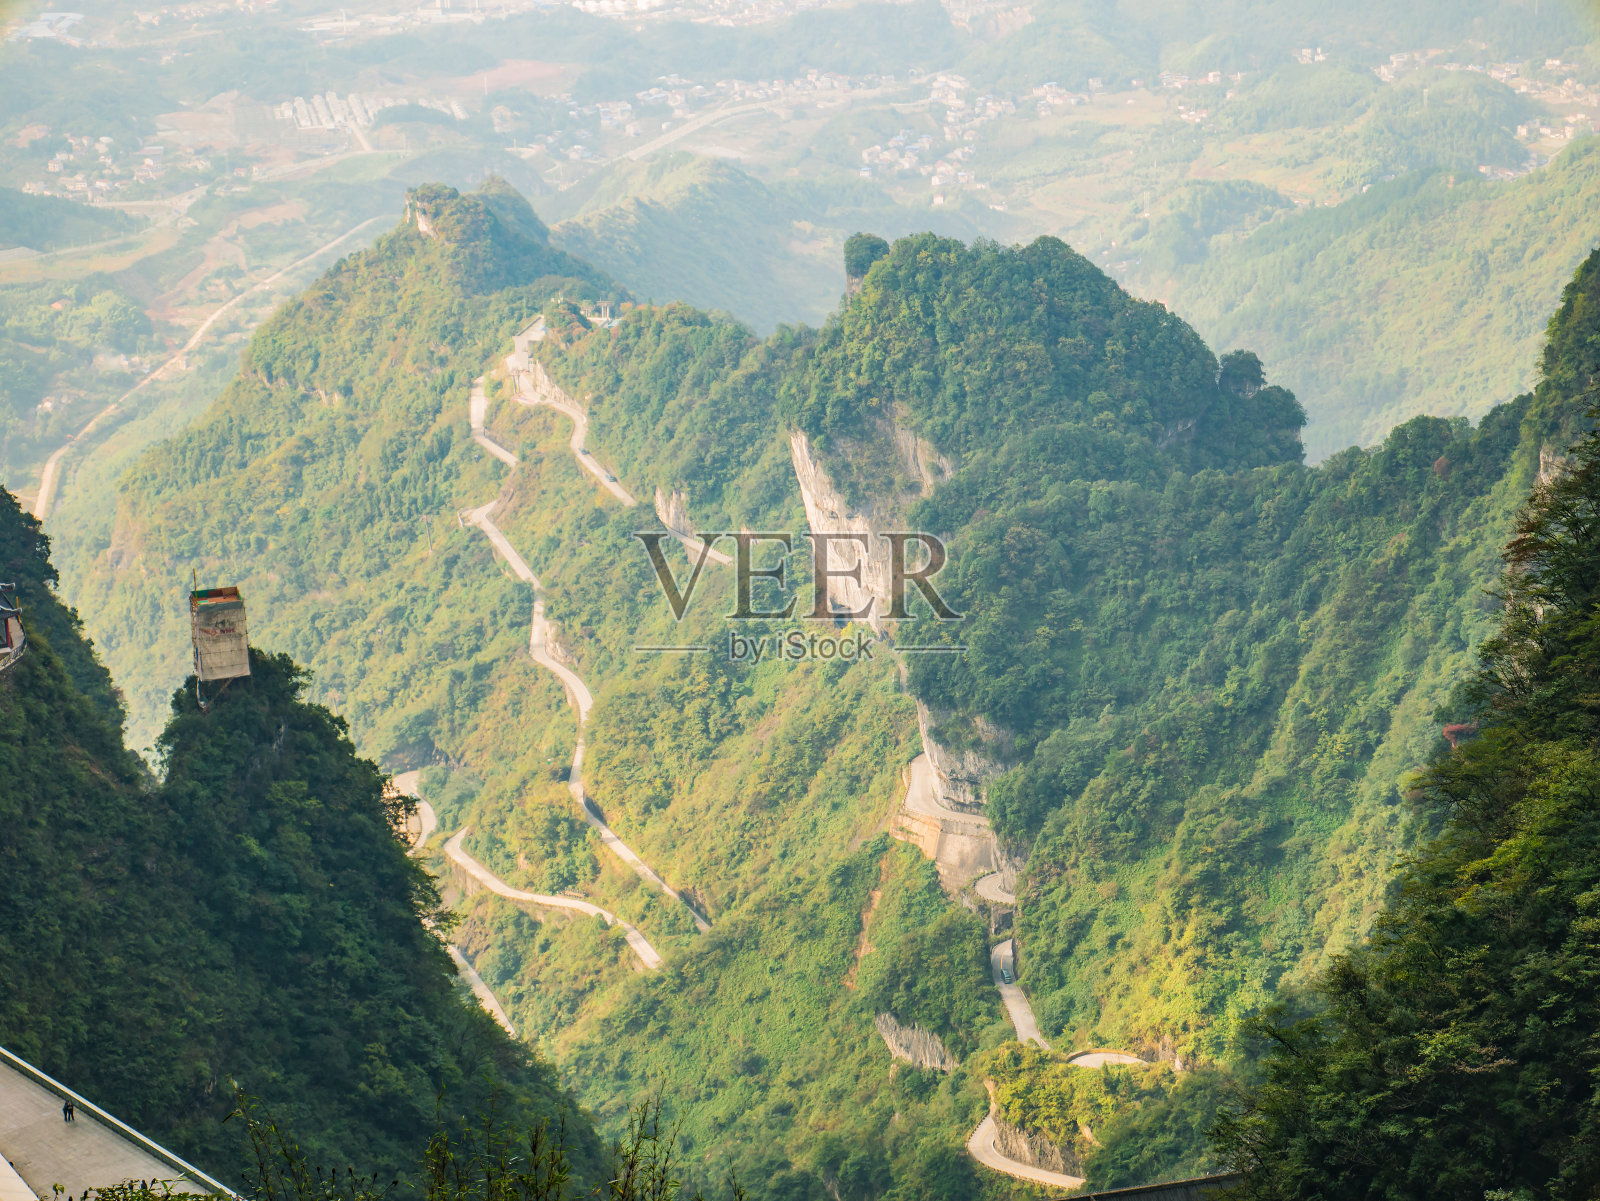 中国张家界市天门山国家公园天门洞的美丽风景照片摄影图片